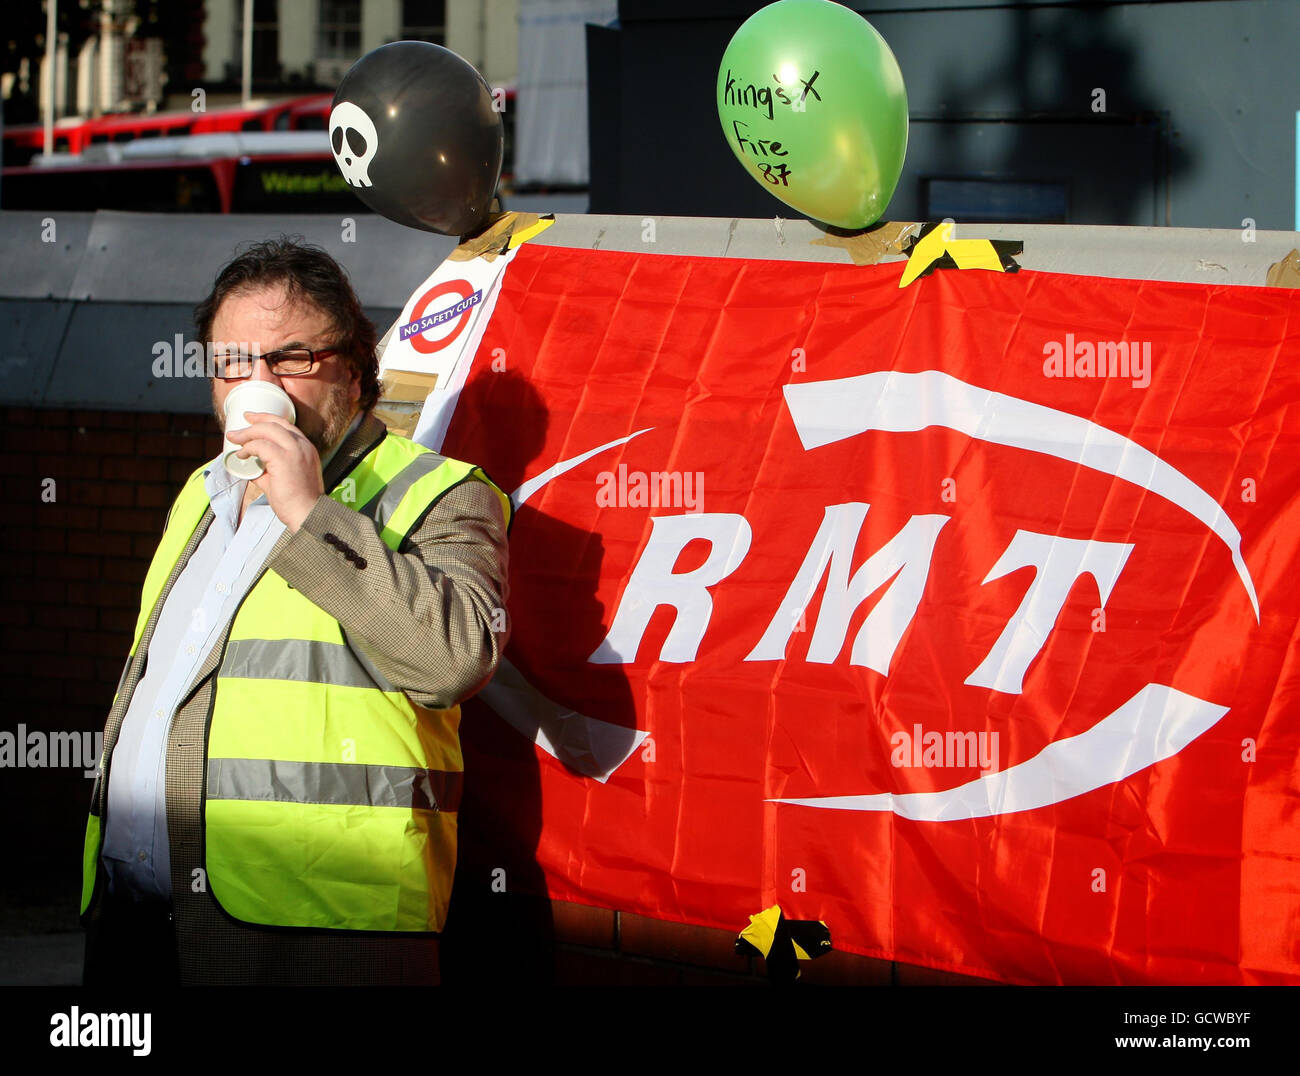 La linea di picket RMT fuori dalla stazione della metropolitana Victoria, nel centro di Londra, in quanto i servizi sono stati paralizzati a causa di uno sciopero da parte di lavoratori in protesta per i tagli al lavoro, causando miseria per pendolari e altri viaggiatori. Foto Stock